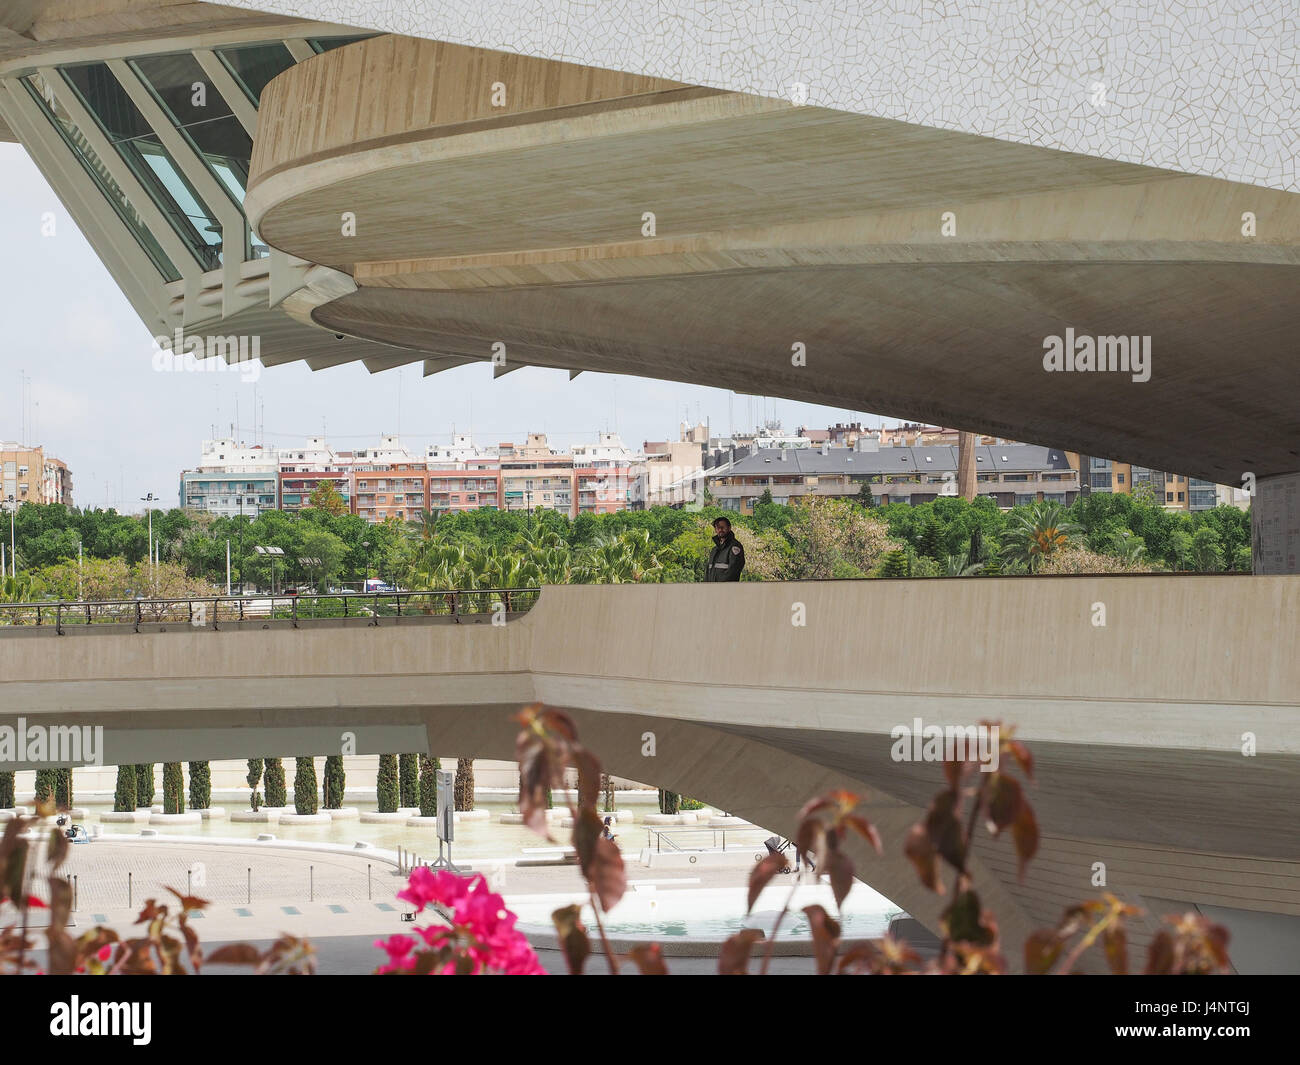 eine Calatrava Architektur Königin Sofia Palast der Künste an der kulturellen Zentrum City of Arts and Science in Valencia, Spanien Stockfoto